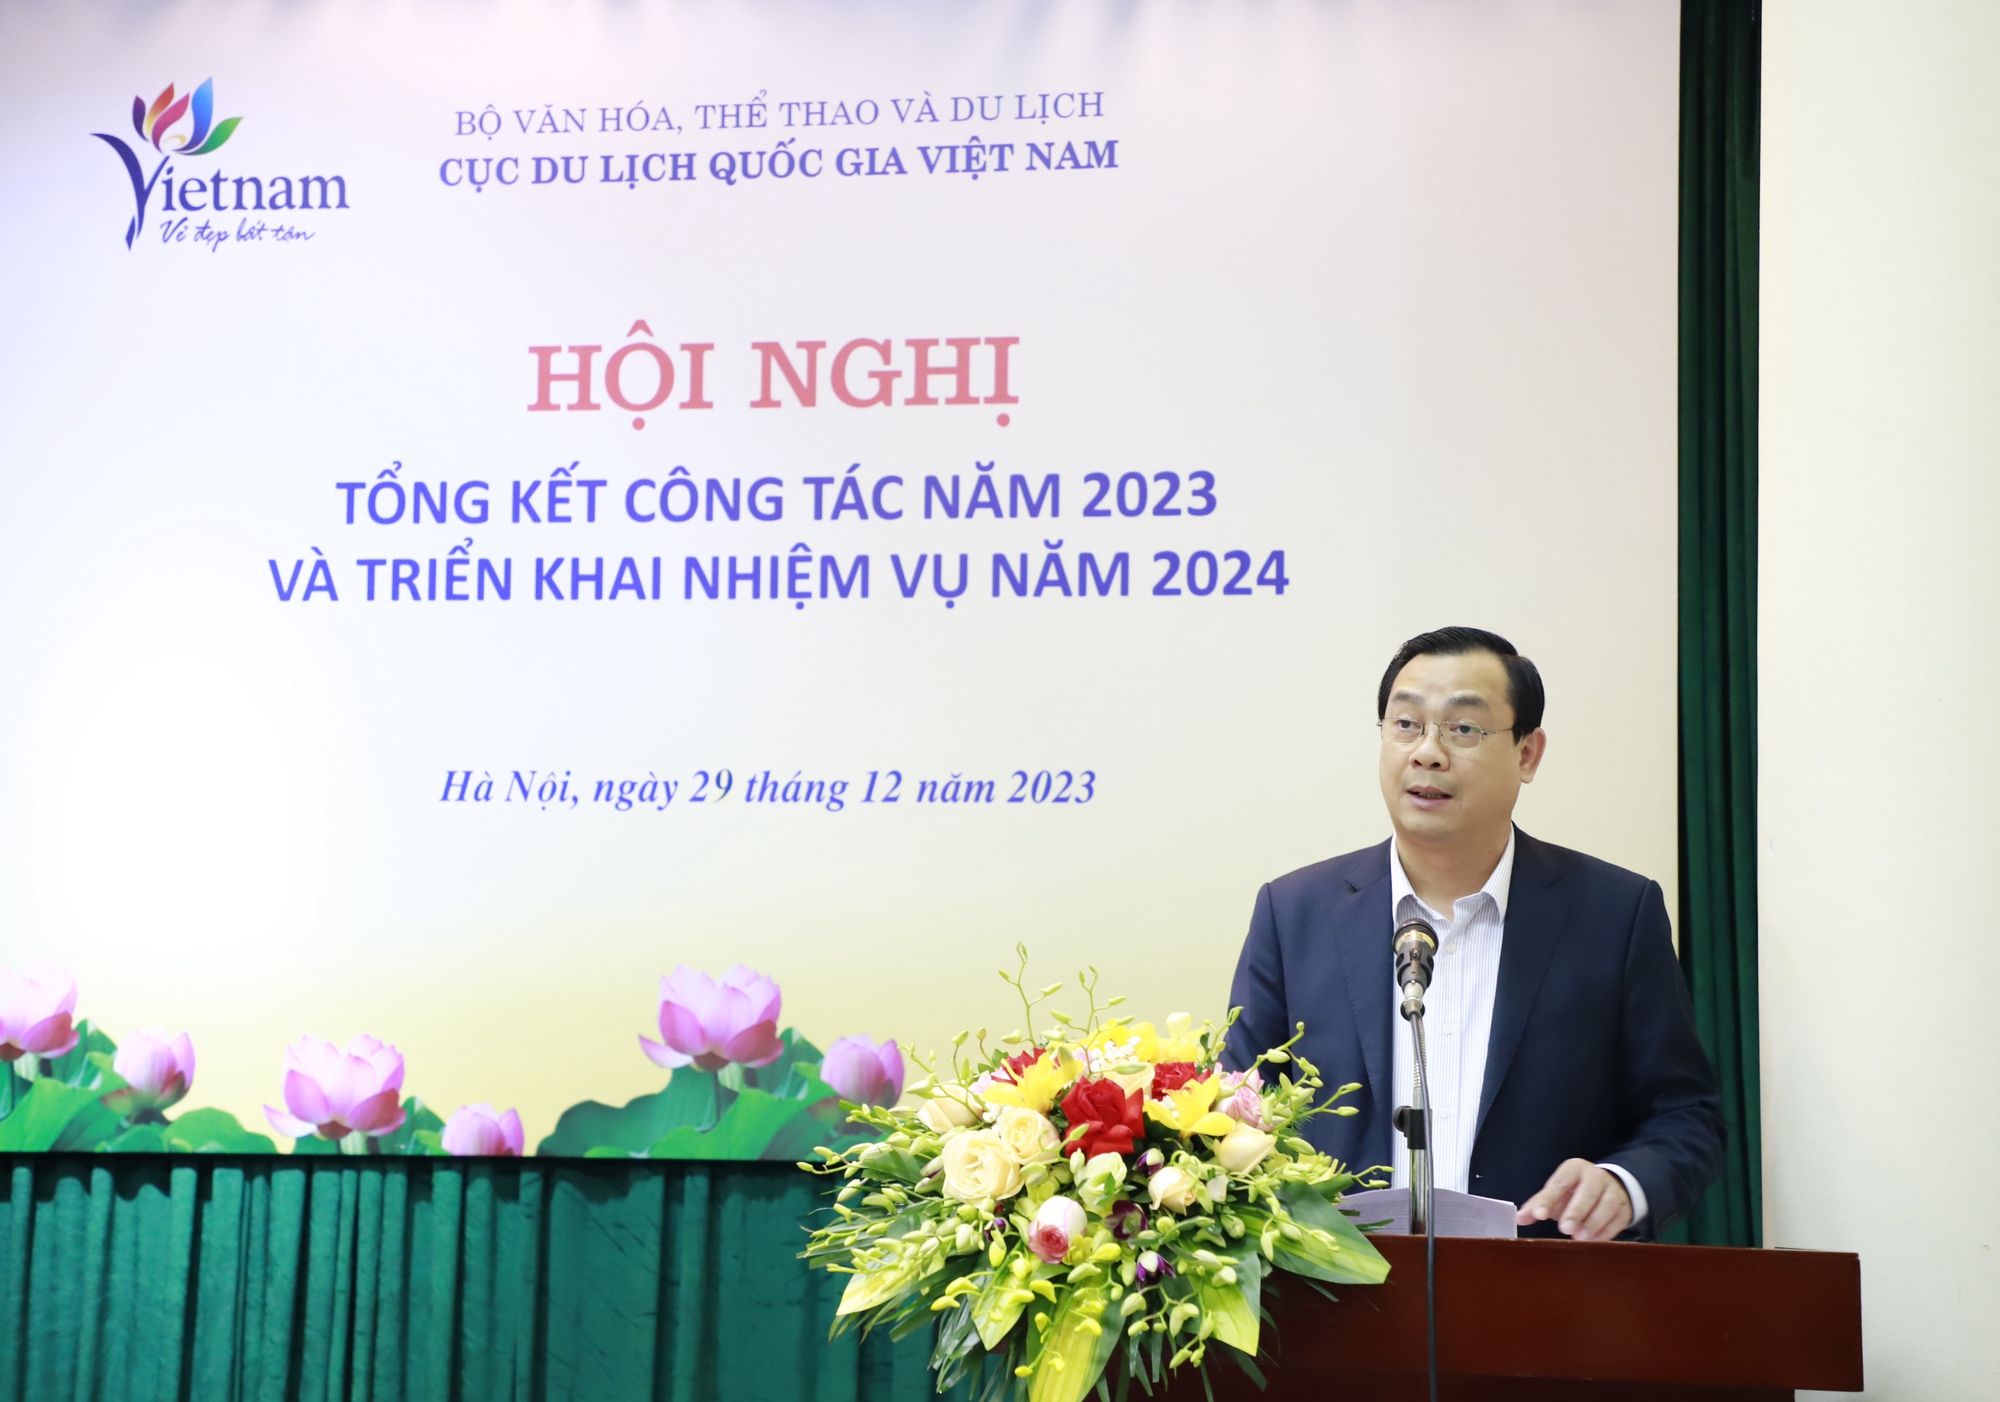 Bộ trưởng Nguyễn Văn Hùng nêu 5 từ khóa phát triển Cục Du lịch quốc gia Việt Nam - Ảnh 2.